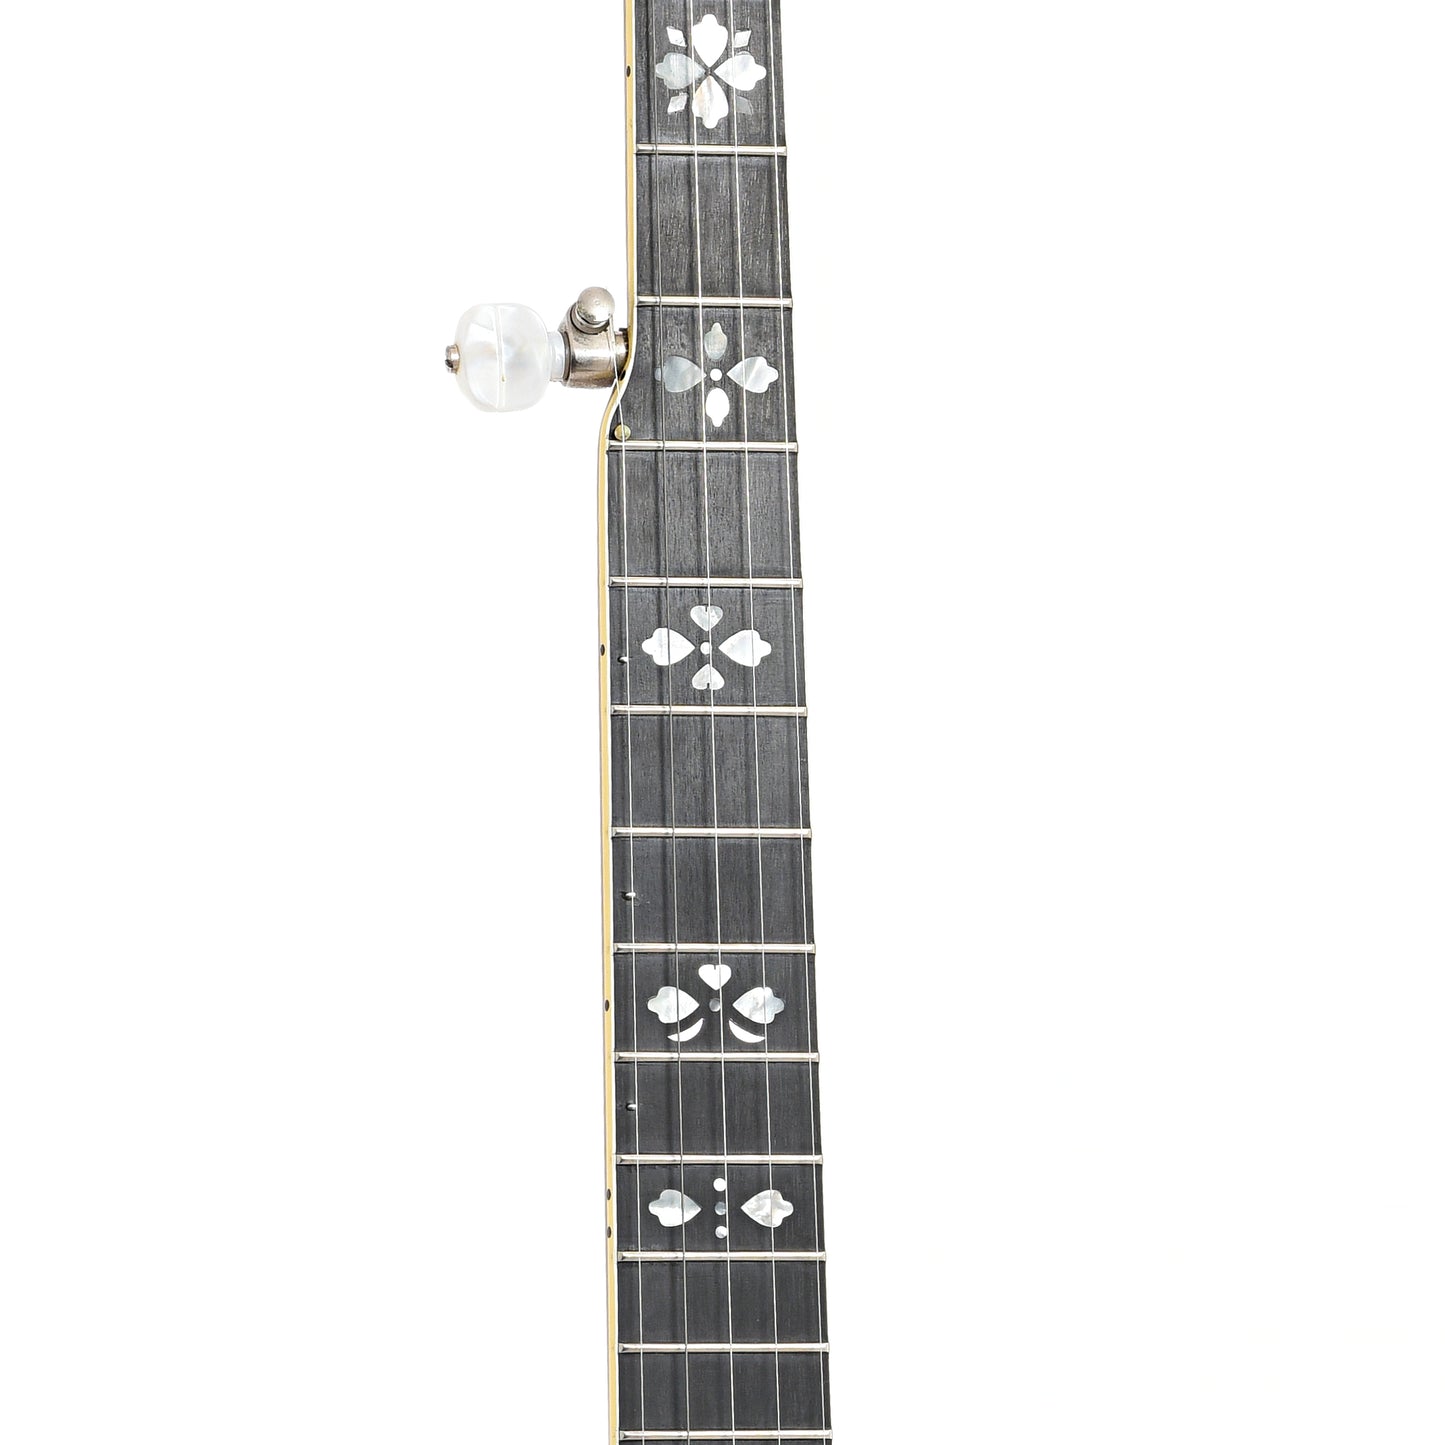 Fretboard of Gibson Earl Scruggs Standard Resonator Banjo (2002)